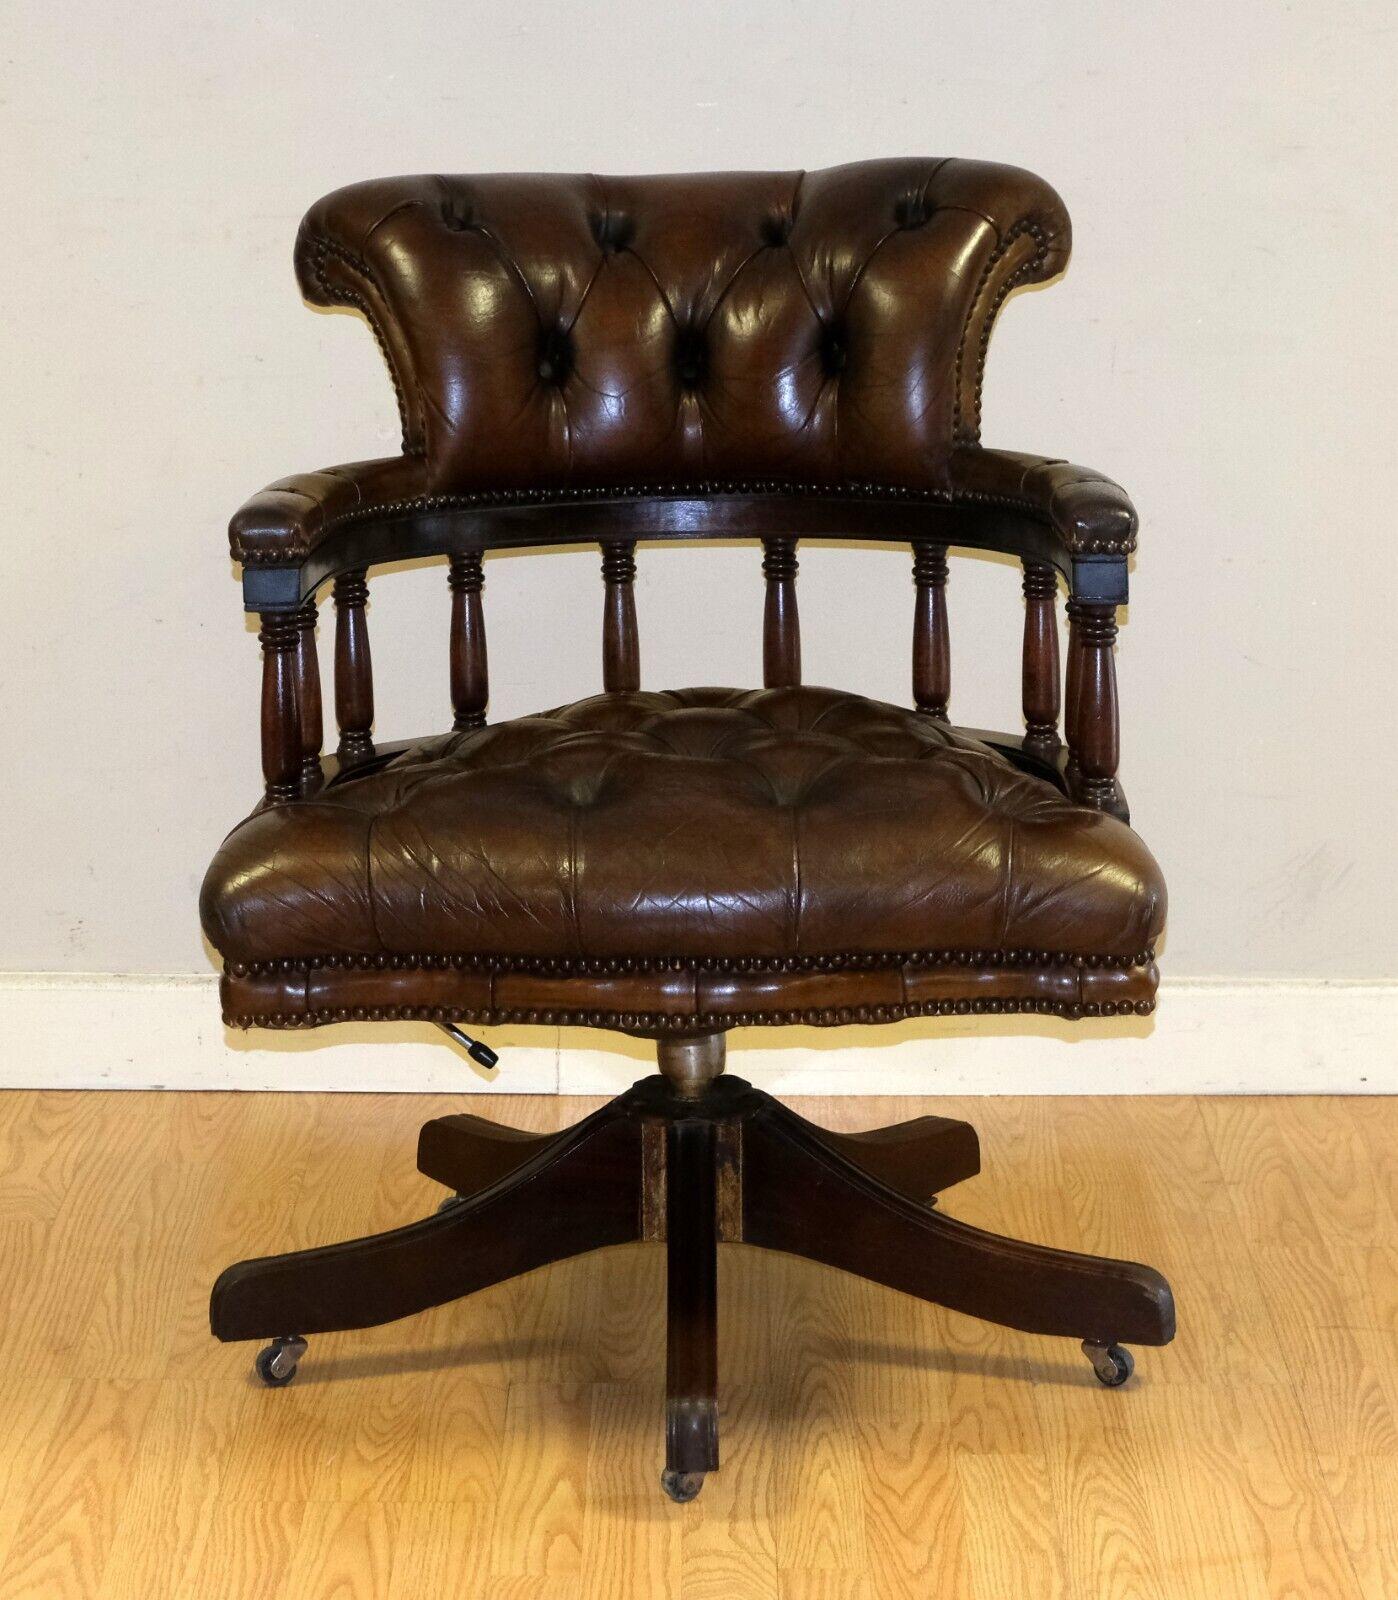 Nous sommes ravis d'offrir à la vente ce magnifique fauteuil capitaine en cuir marron cigare Chesterfield entièrement restauré.

Cette pièce allie style et attractivité, ce qui ajouterait du glamour à votre bureau ou à n'importe quelle pièce. Cette